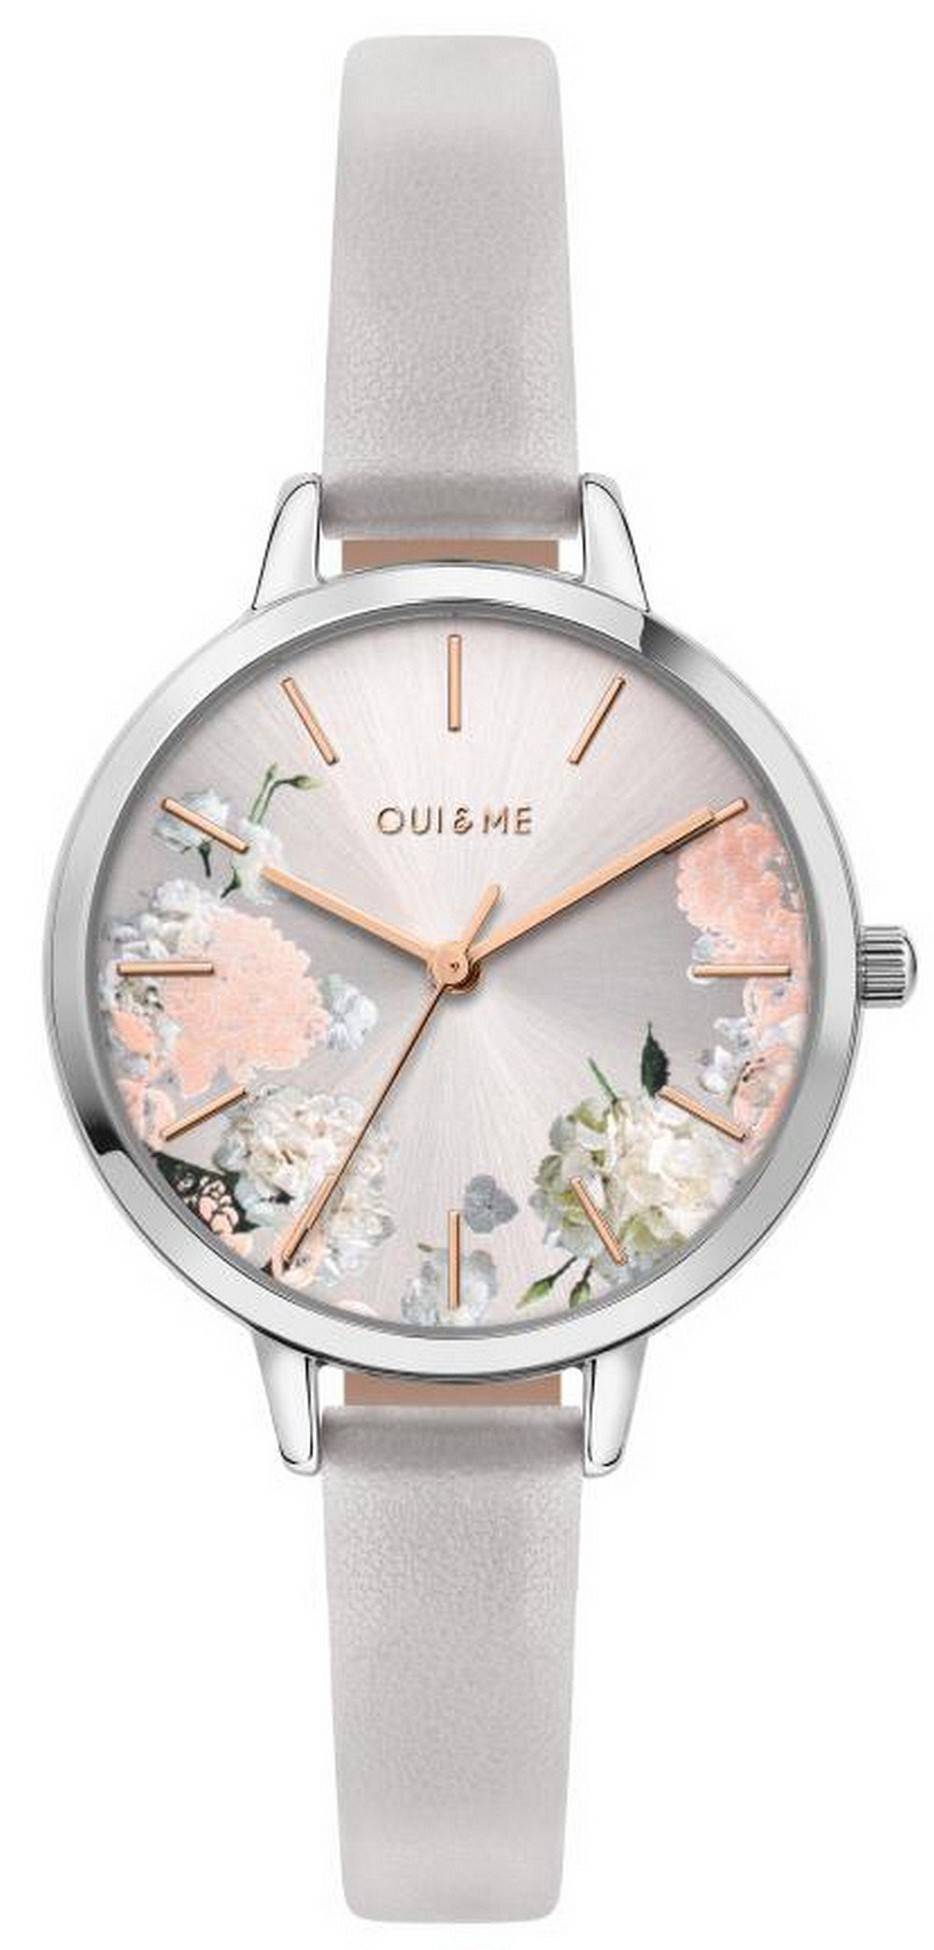 Oui & Me Petite Fleurette Silver Dial Leather Strap Quartz ME010098 Women's Watch